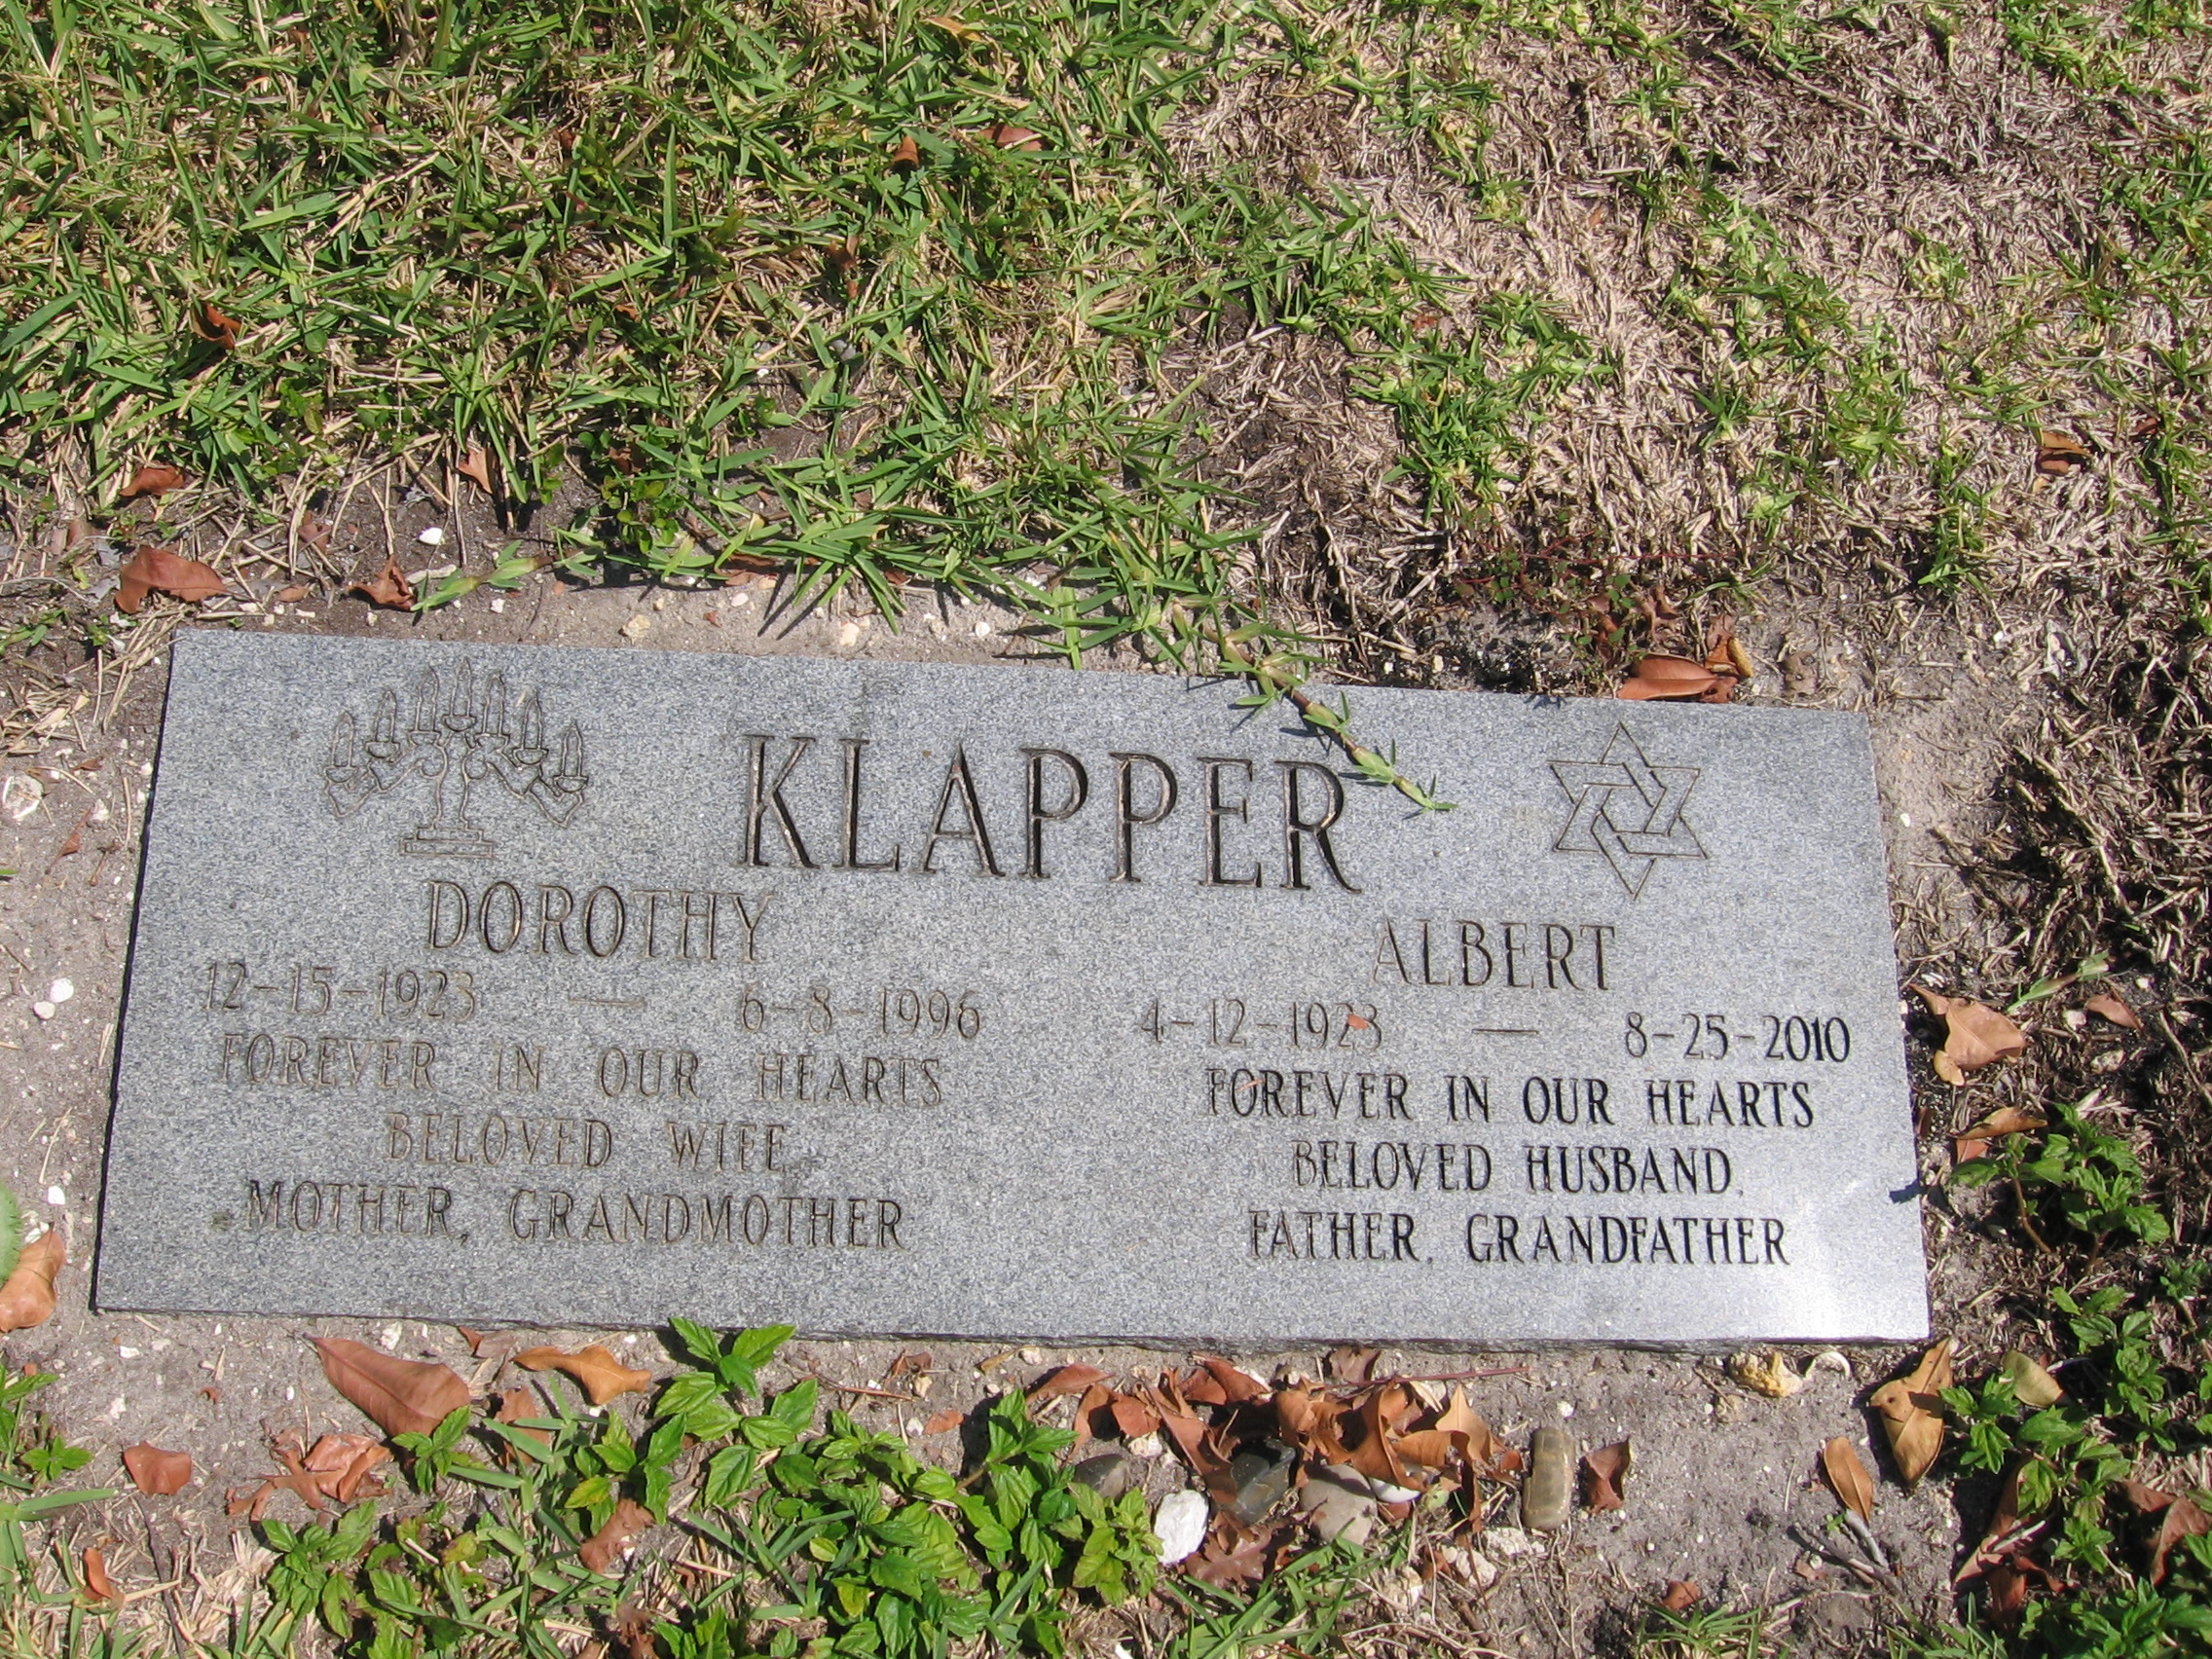 Albert Klapper